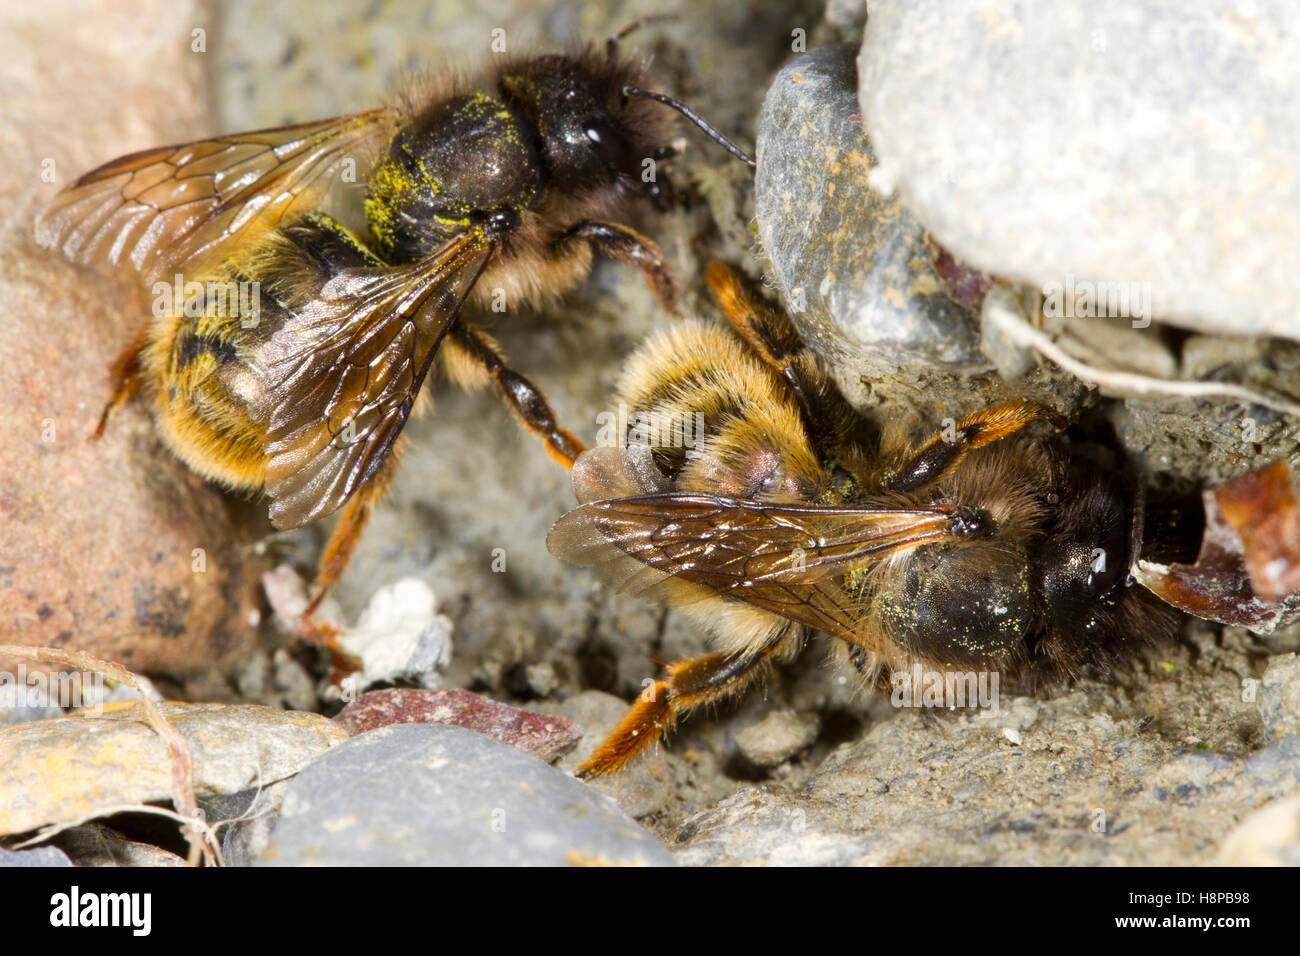 Rot Mason Bienen (Osmia Bicornis) adulte Weibchen sammeln nassen Schlamm für nisten Bau. Powys, Wles. Juni. Stockfoto